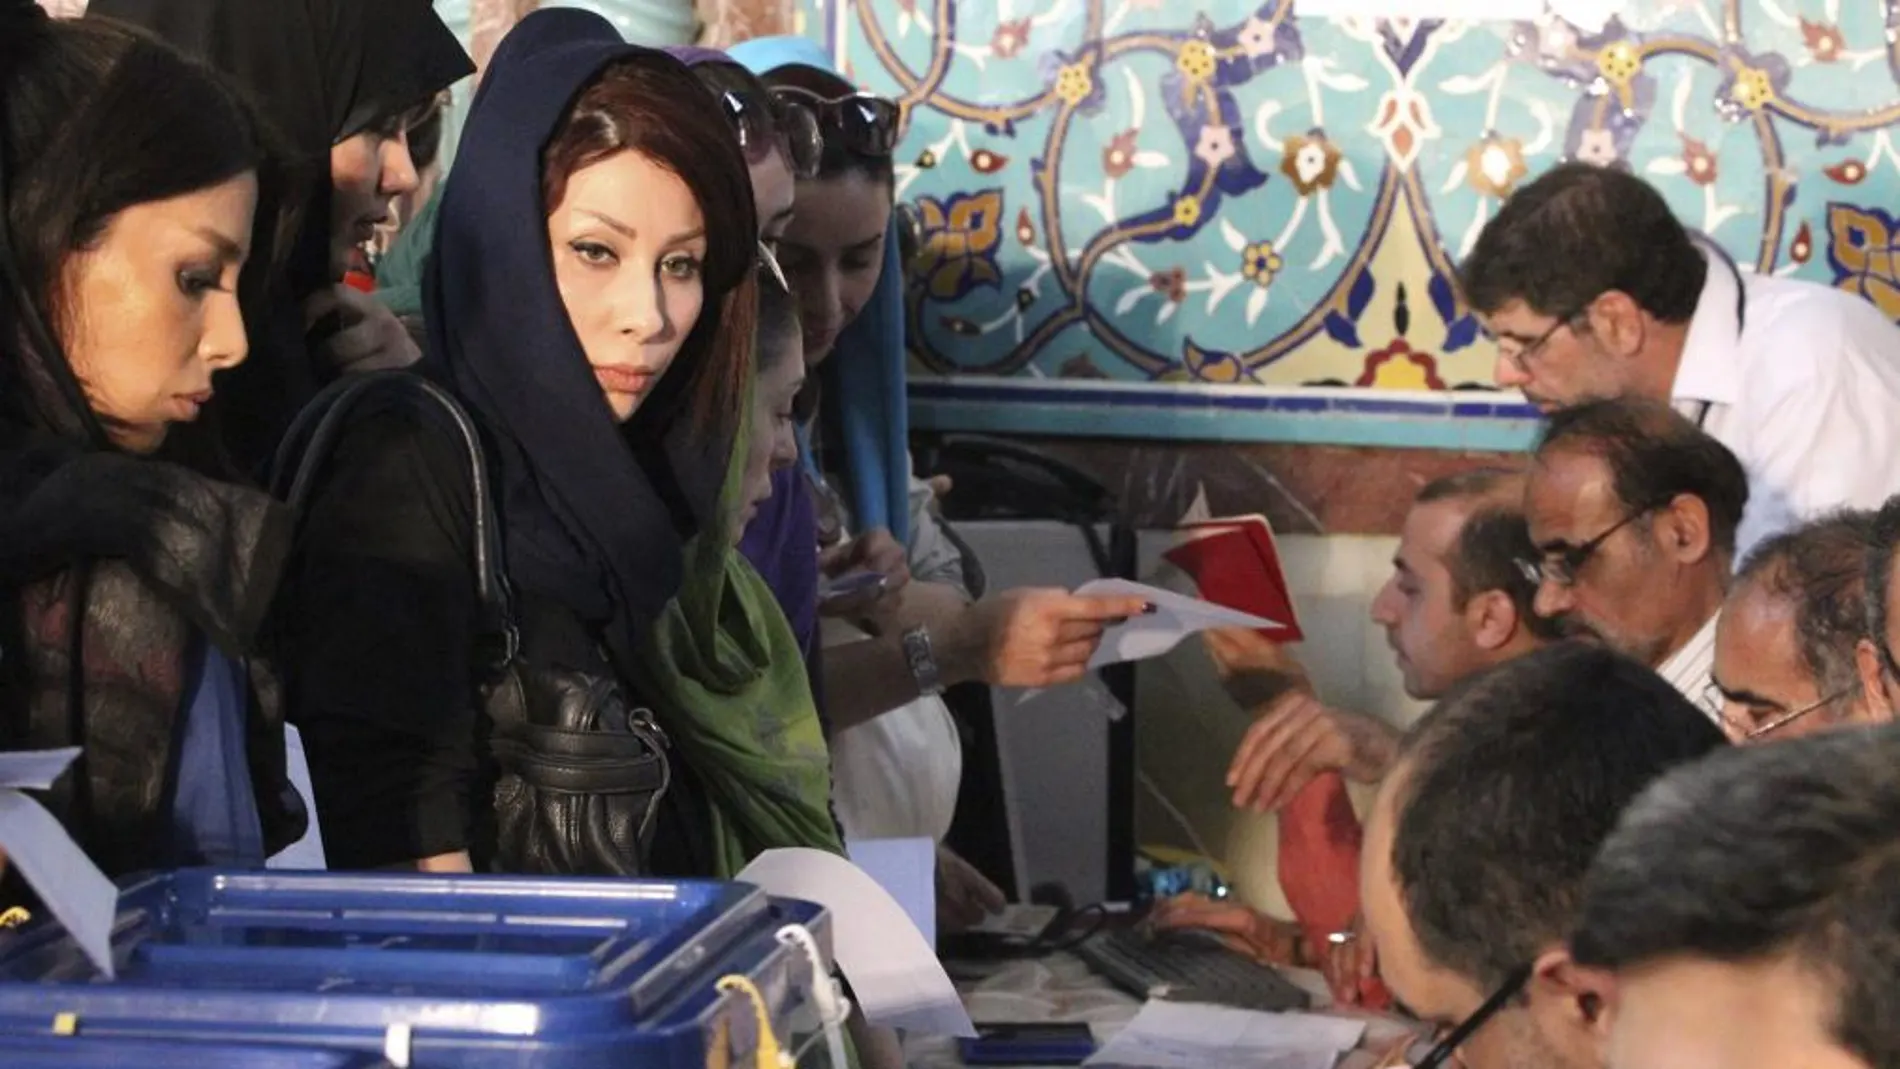 Varias mujeres iraníes ejercen su derecho al voto en las elecciones presidenciales iraníes en Teherán (Irán) hoy, viernes 14 de junio de 2013. Más de cincuenta millones de iraníes, dos terceras partes de la población, están convocados a votar hoy en los undécimos comicios presidenciales .